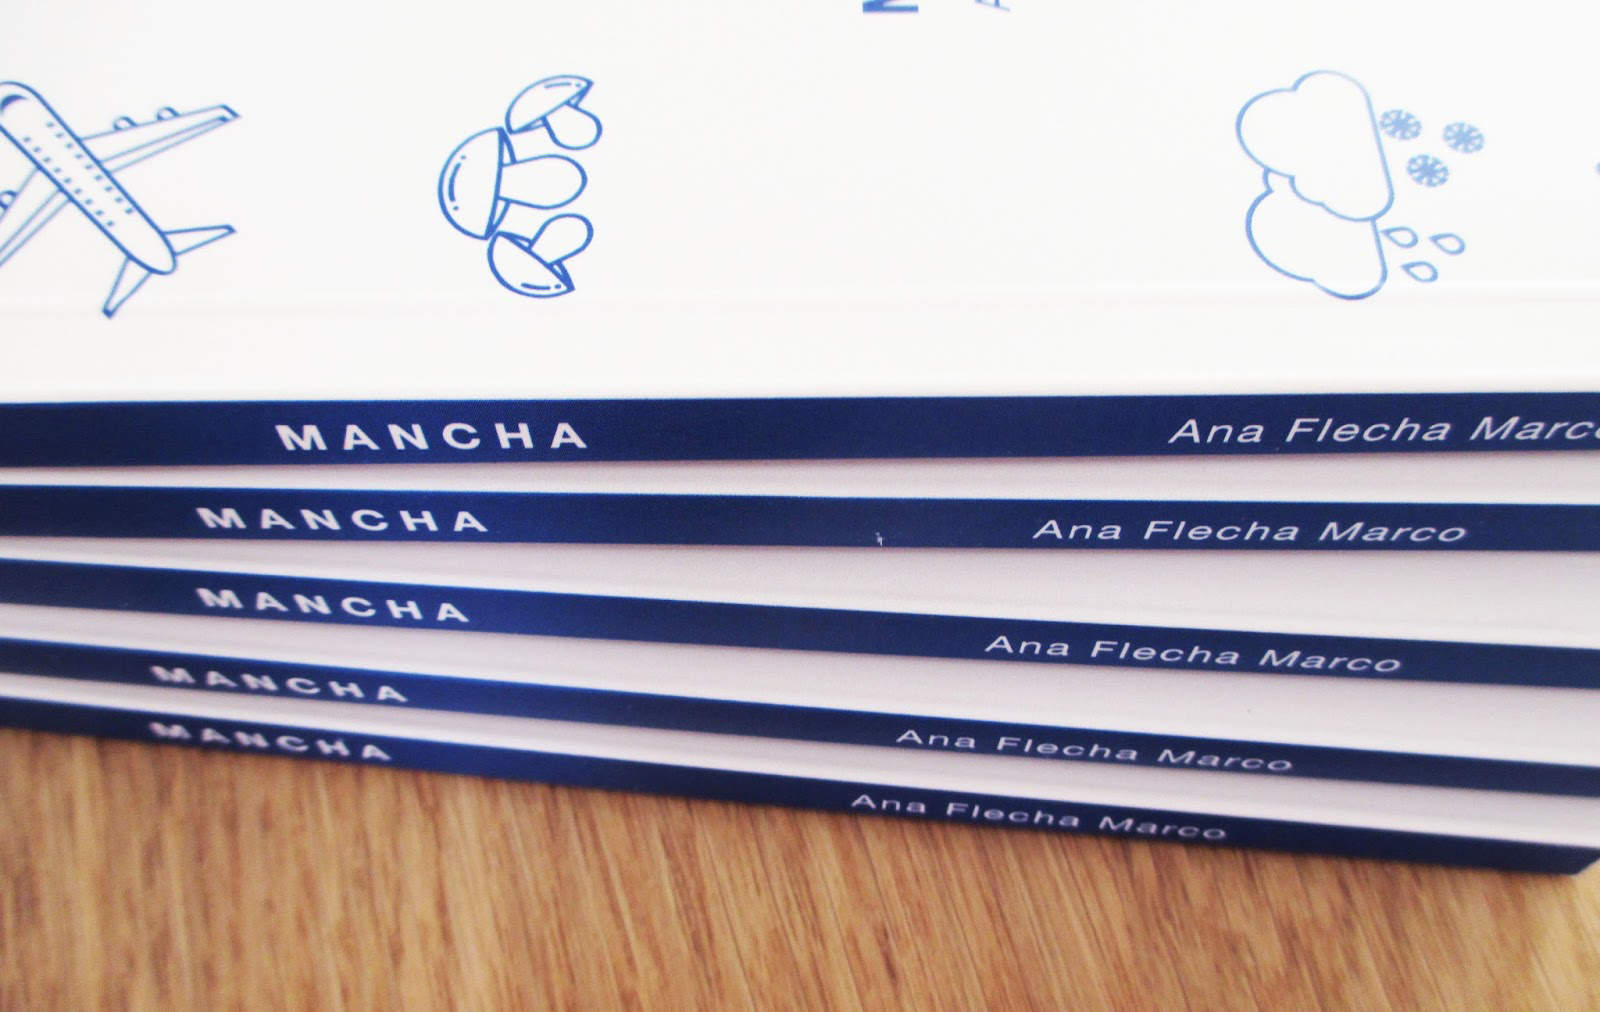 Os presentamos «Mancha», de Ana Flecha Marco